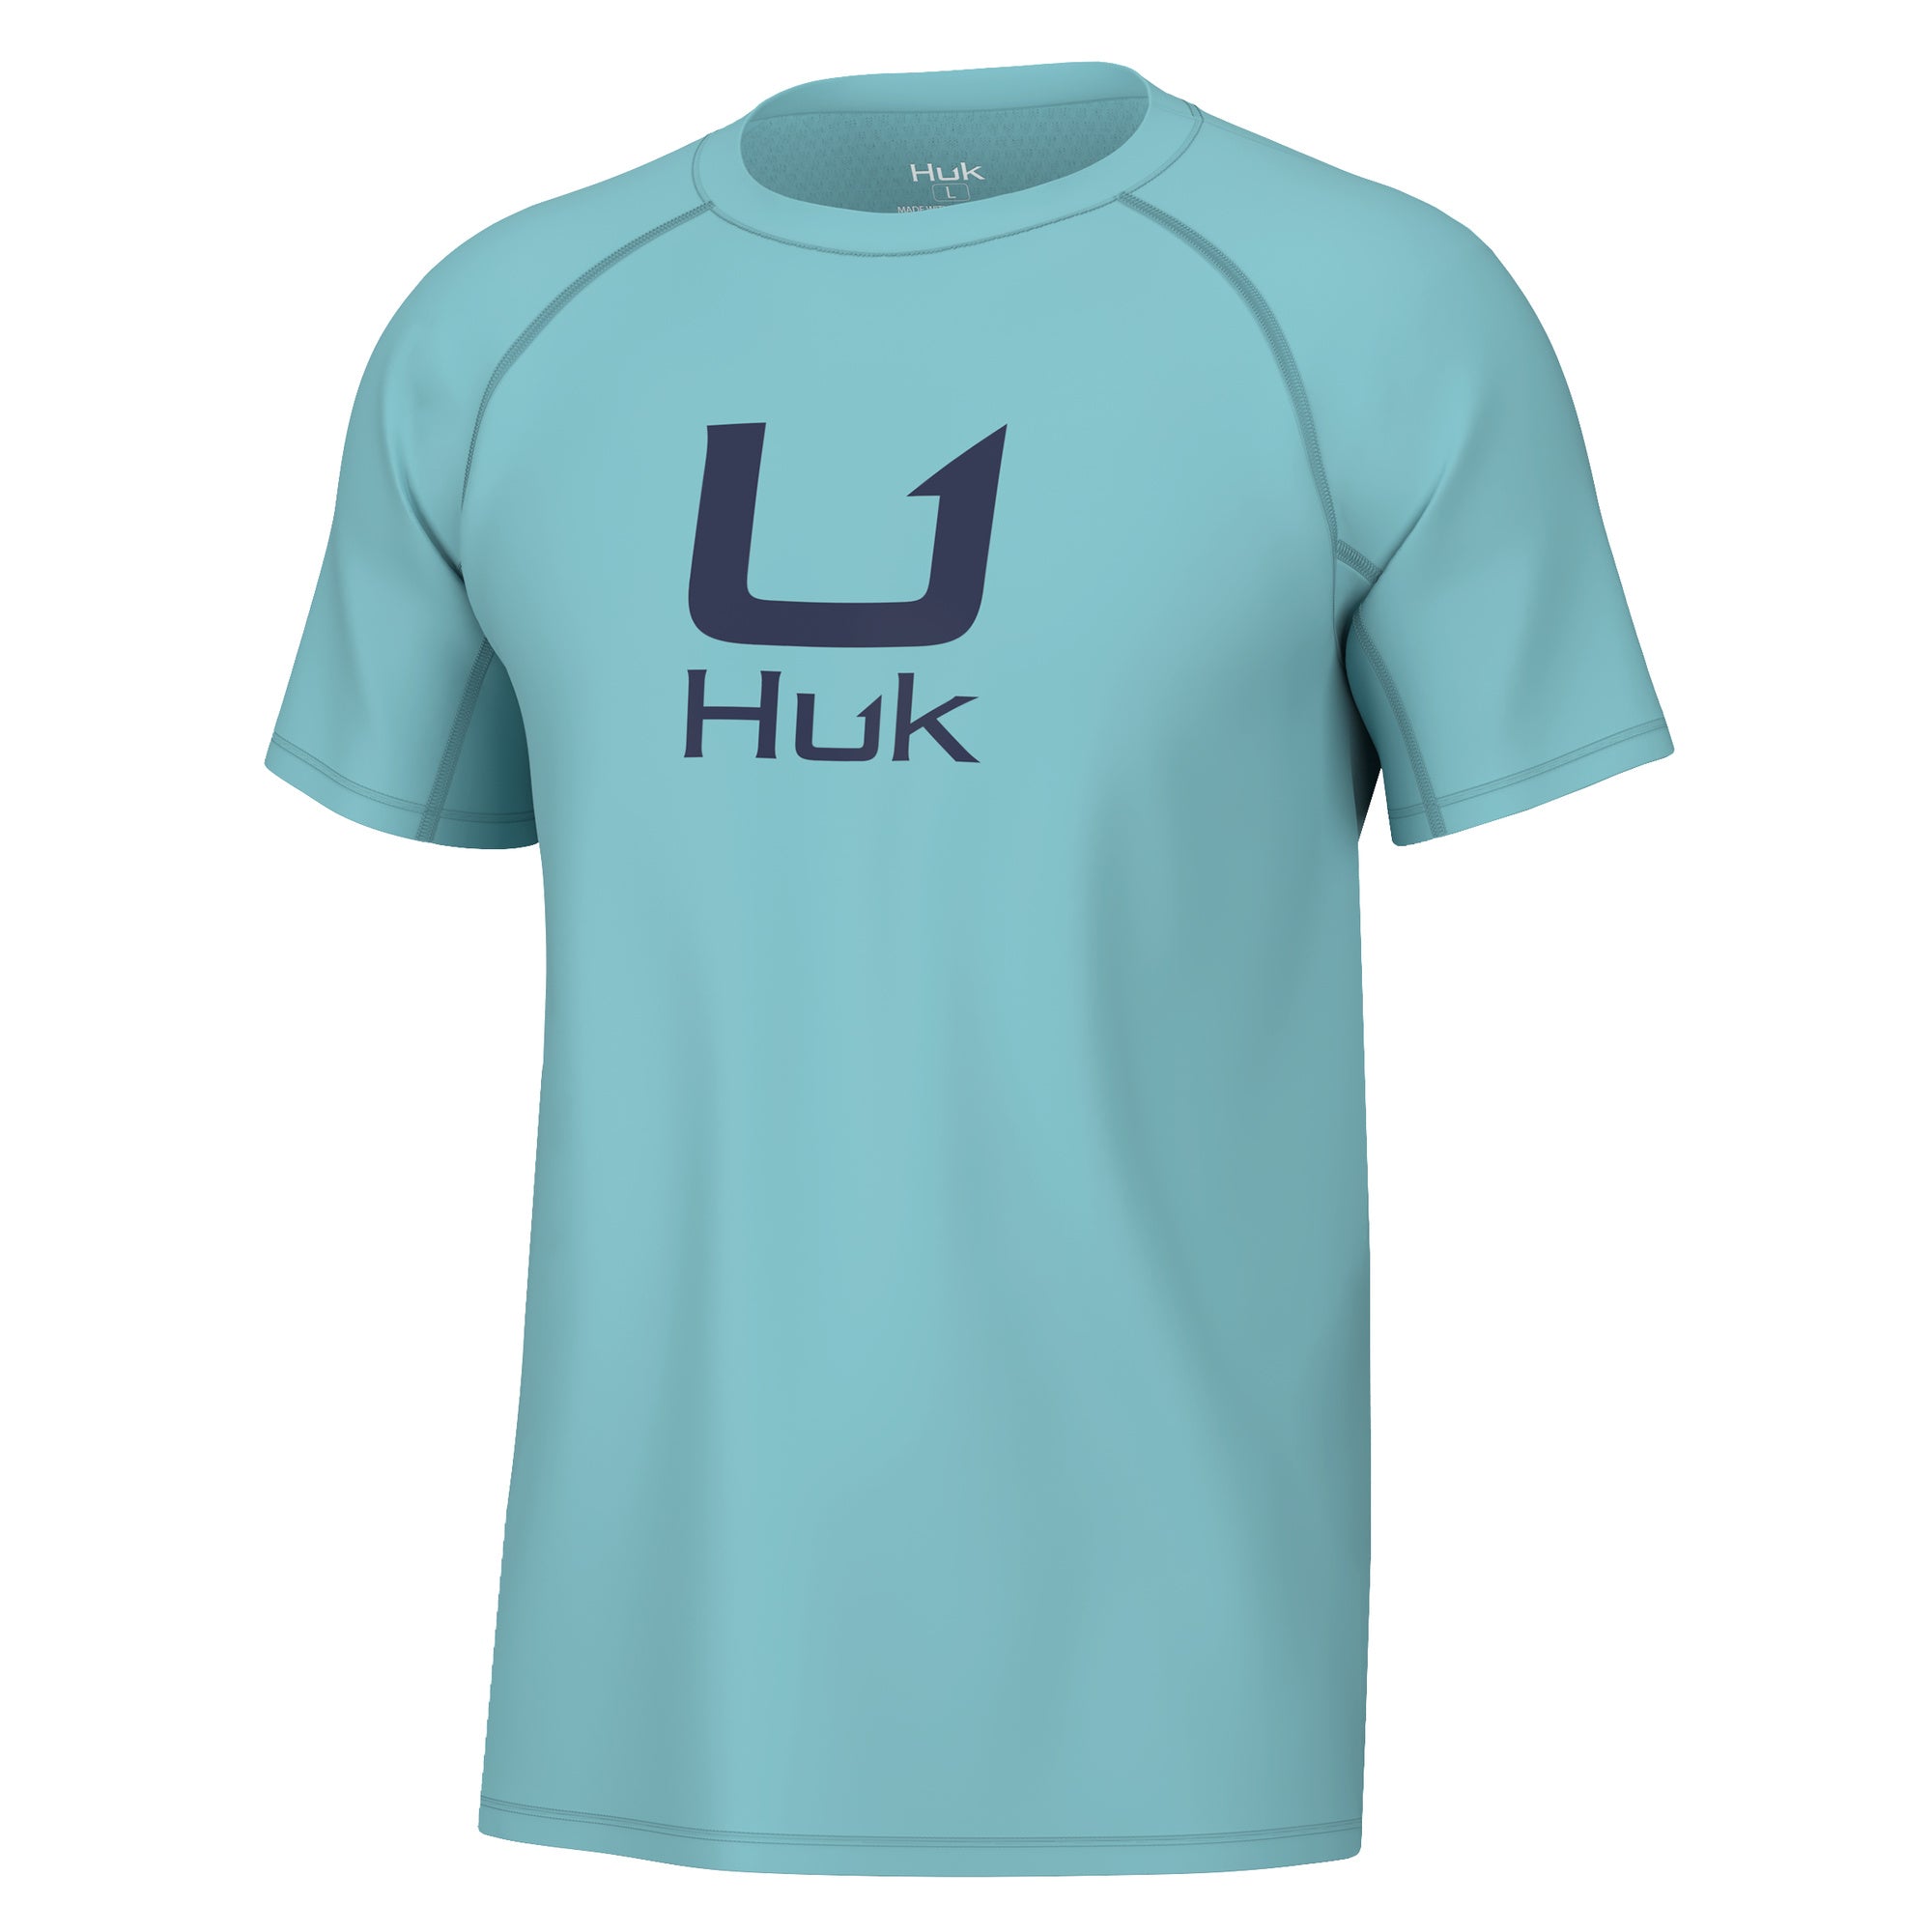 Huk Teaser Short Sleeve Shirt | Performance Button Down, Silver Blue, H1500092